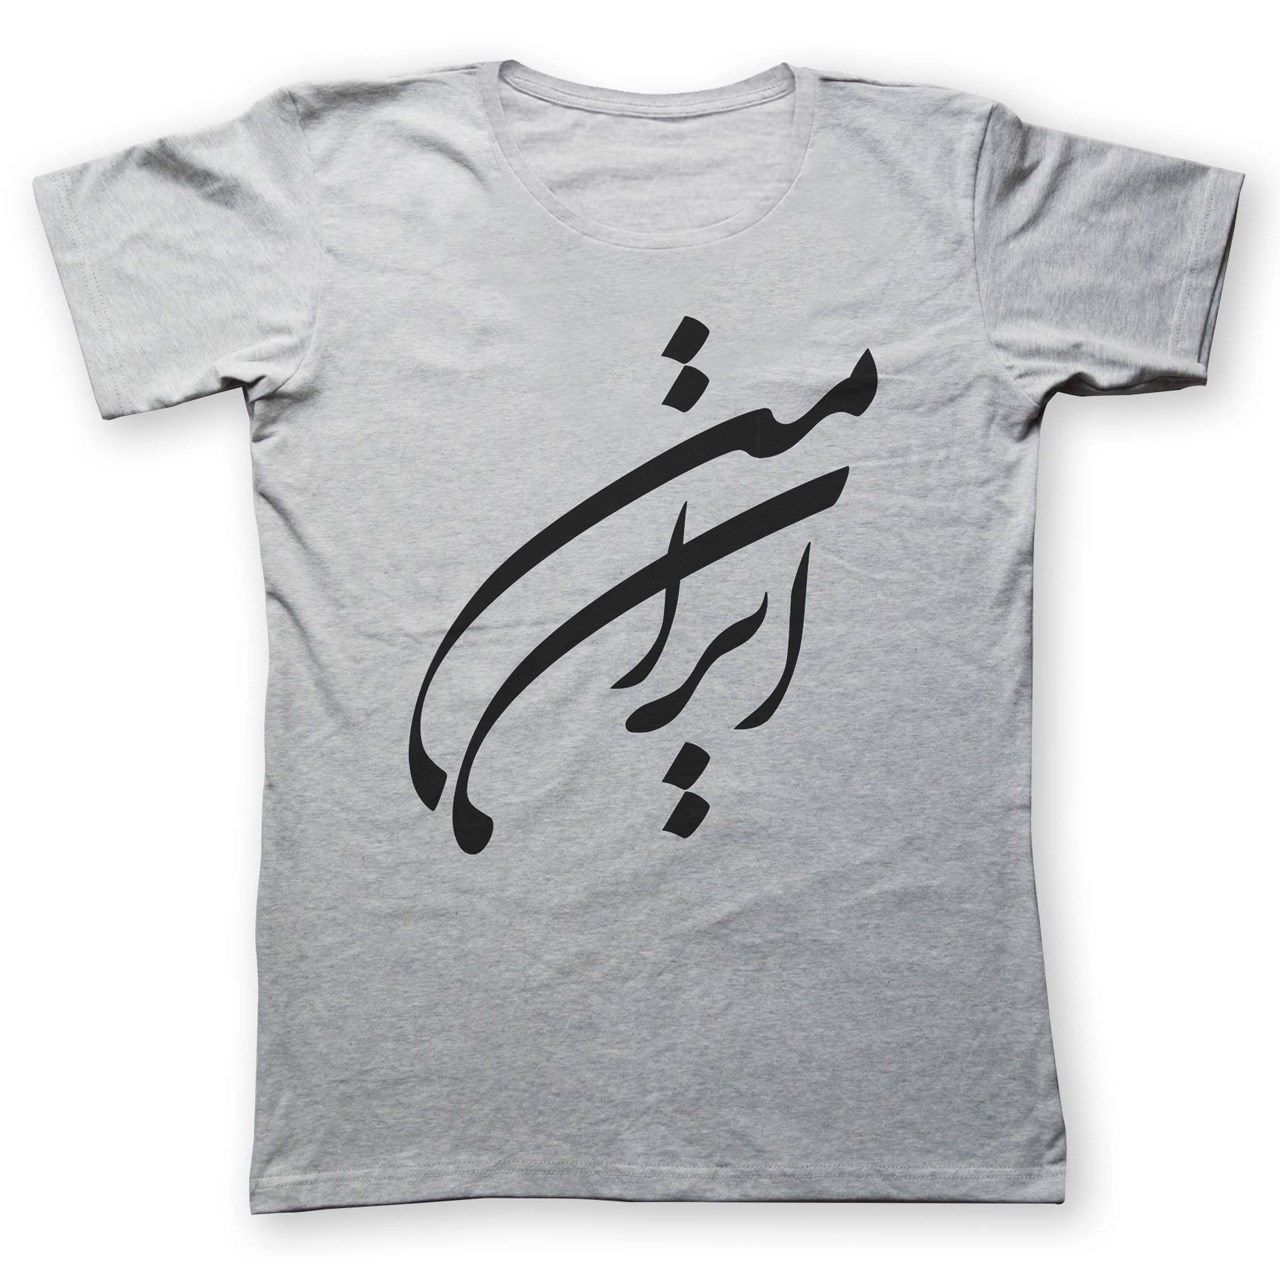 تی شرت به رسم طرح ایران من کد 220 -  - 1